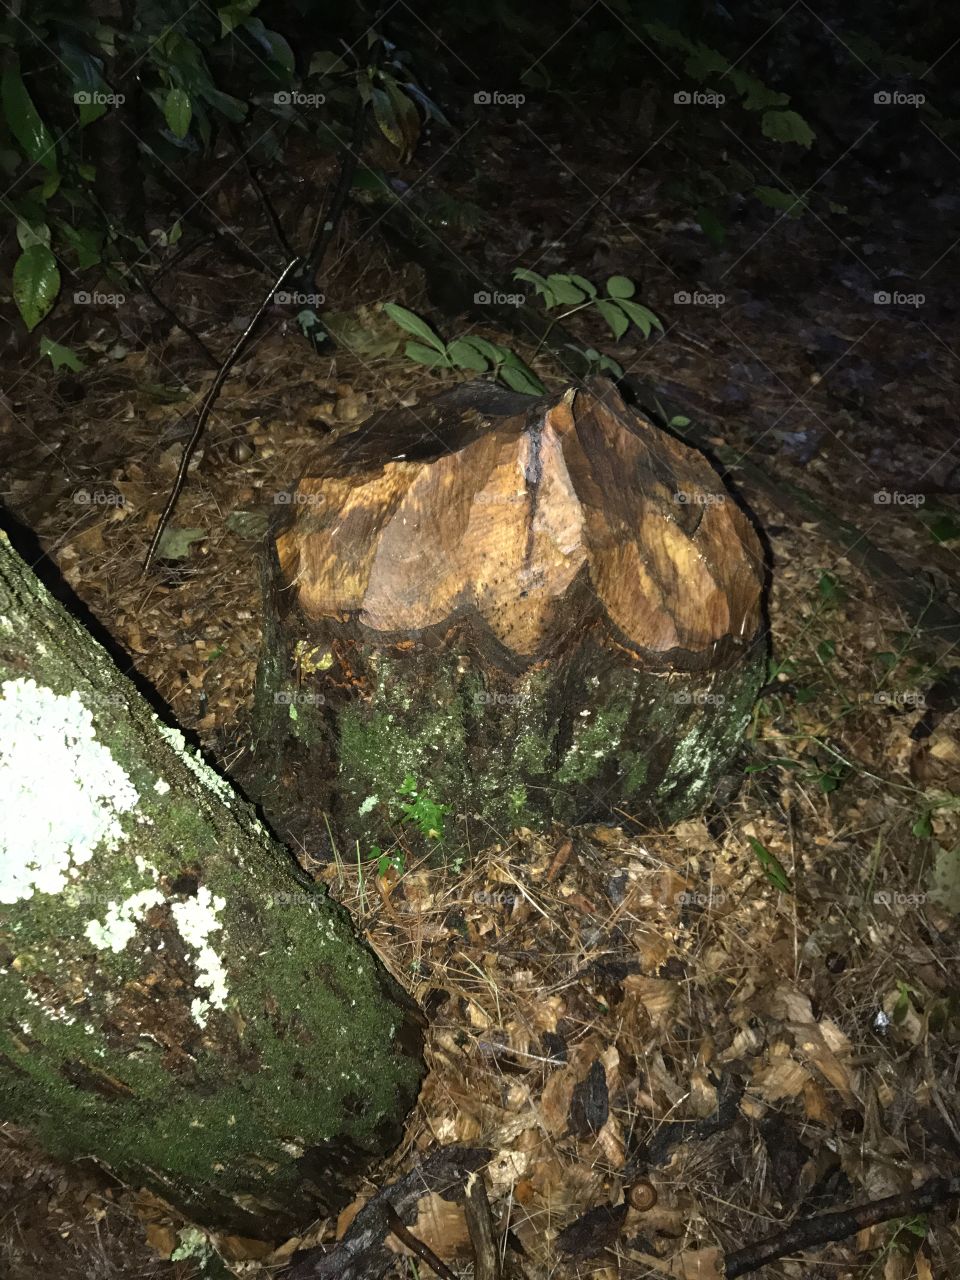 Beaver evidence